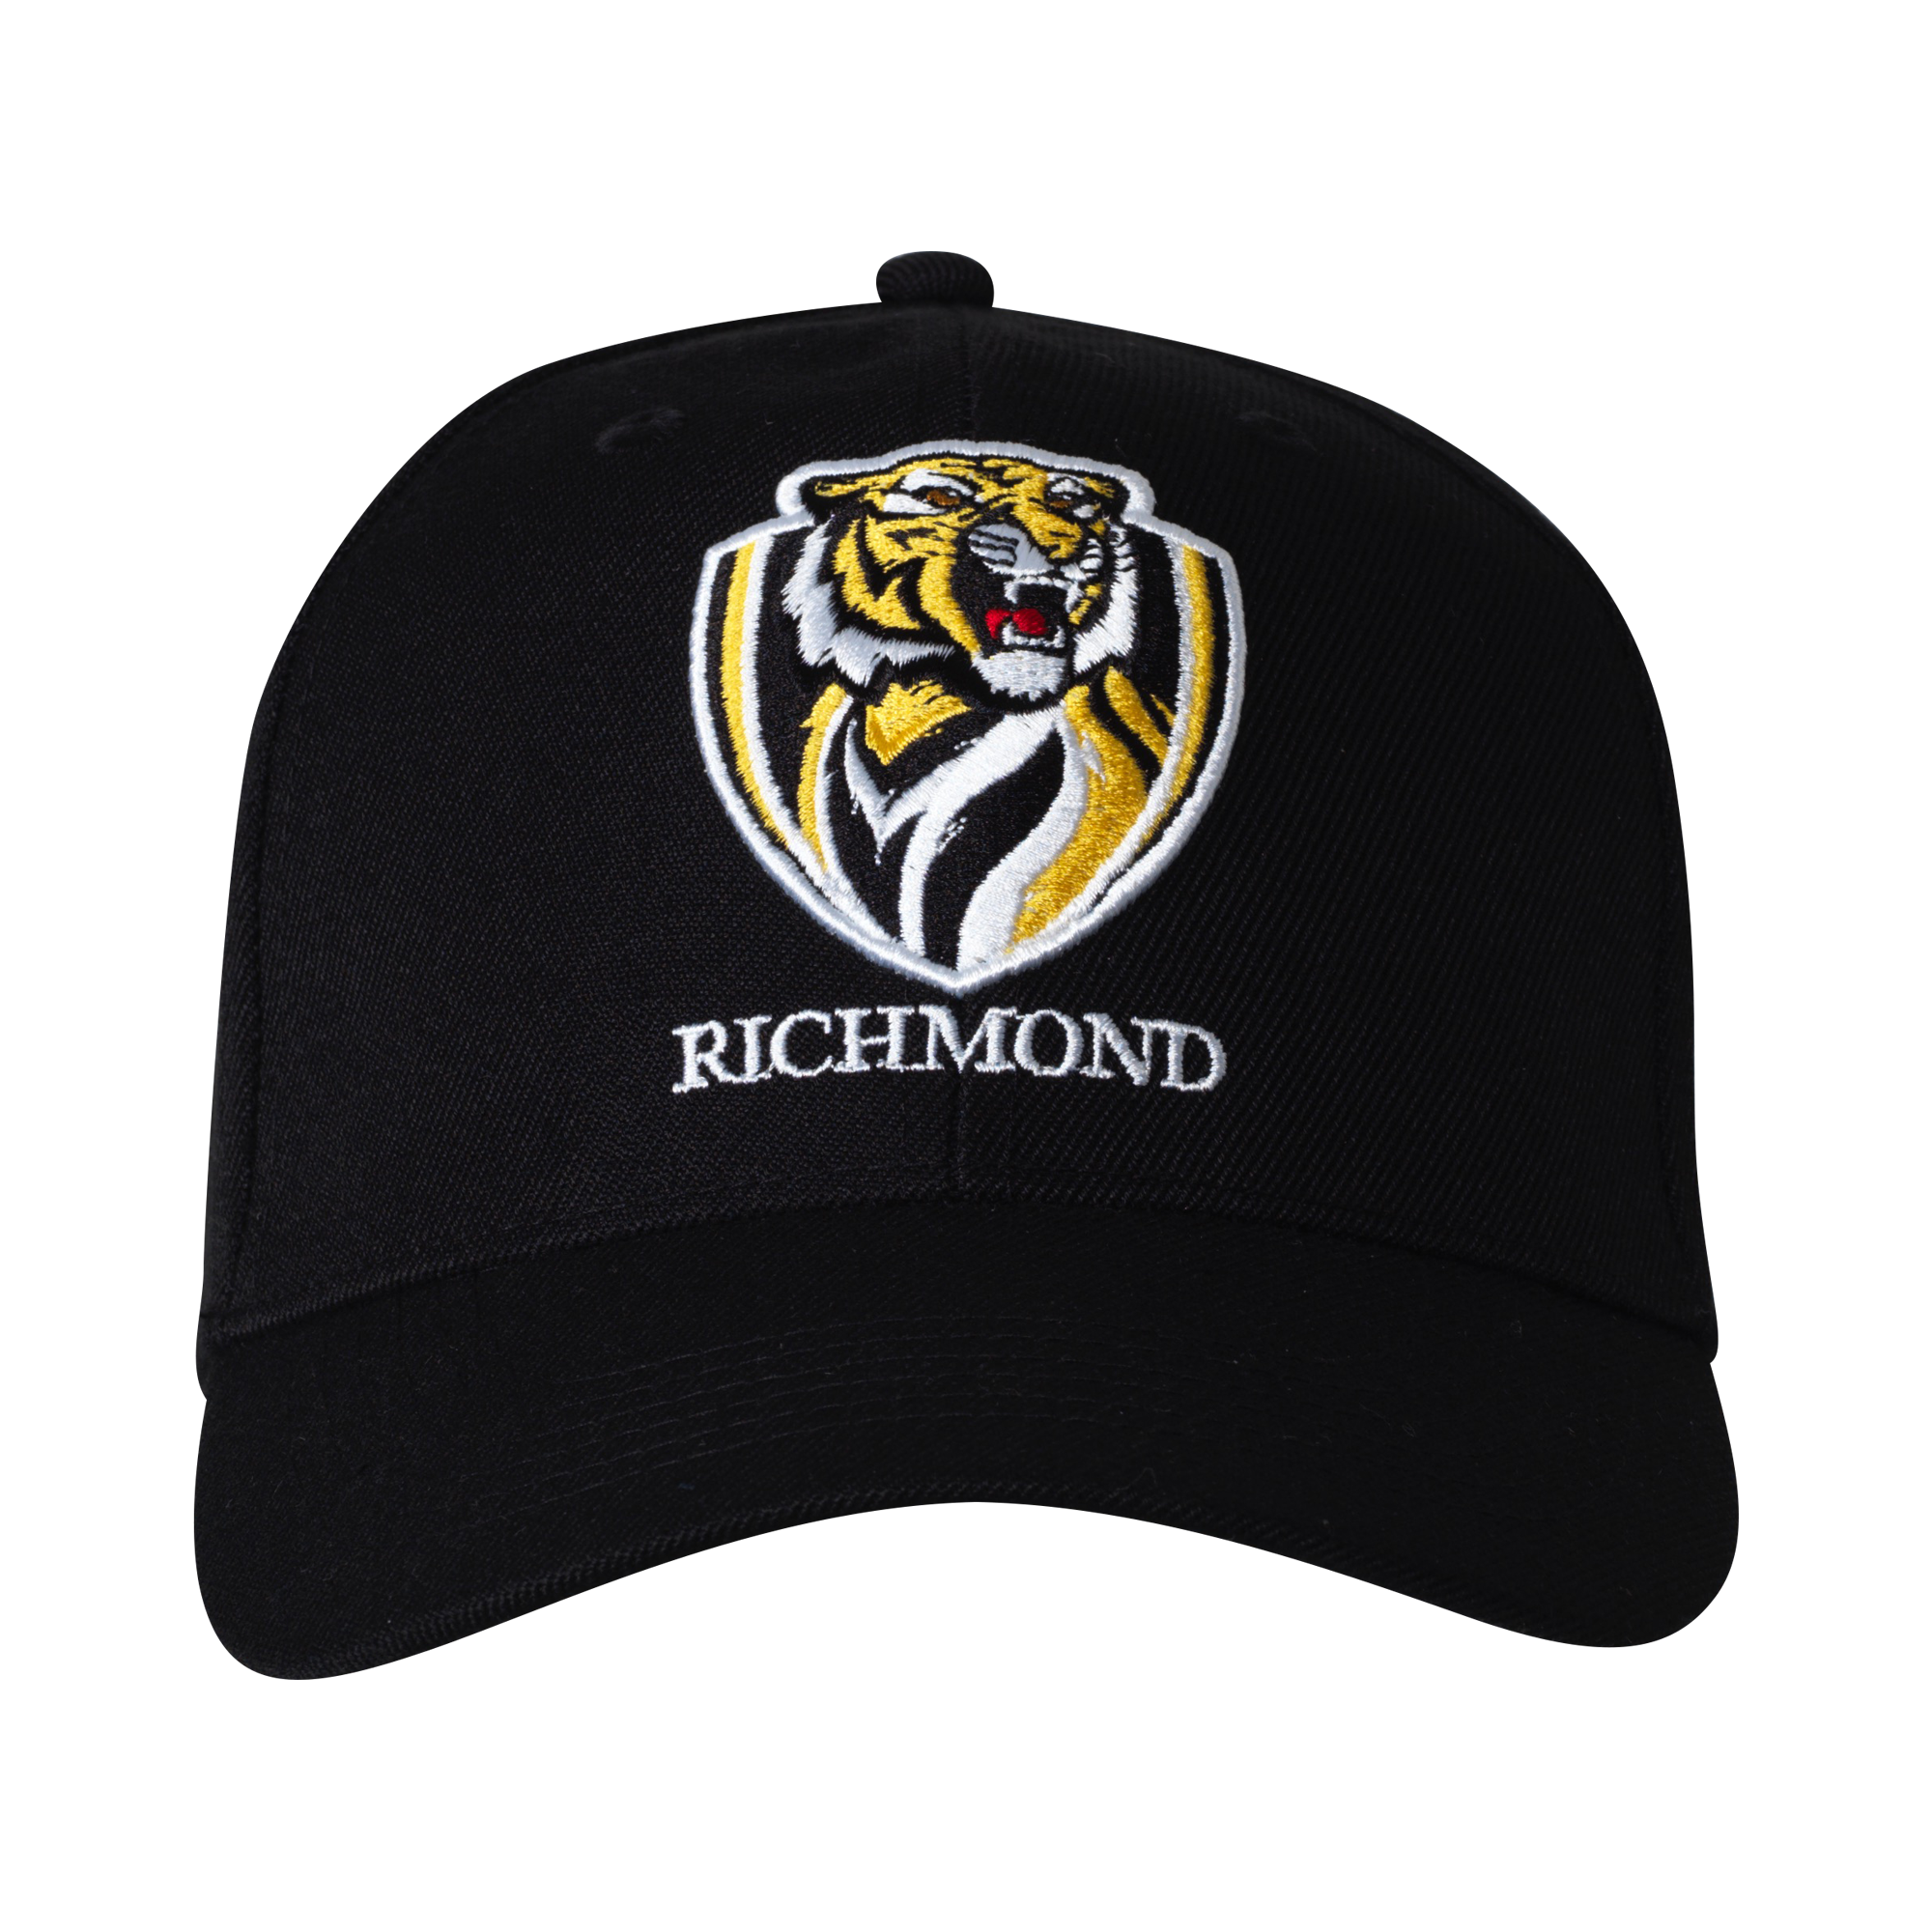 Richmond Tigers Staple Cap